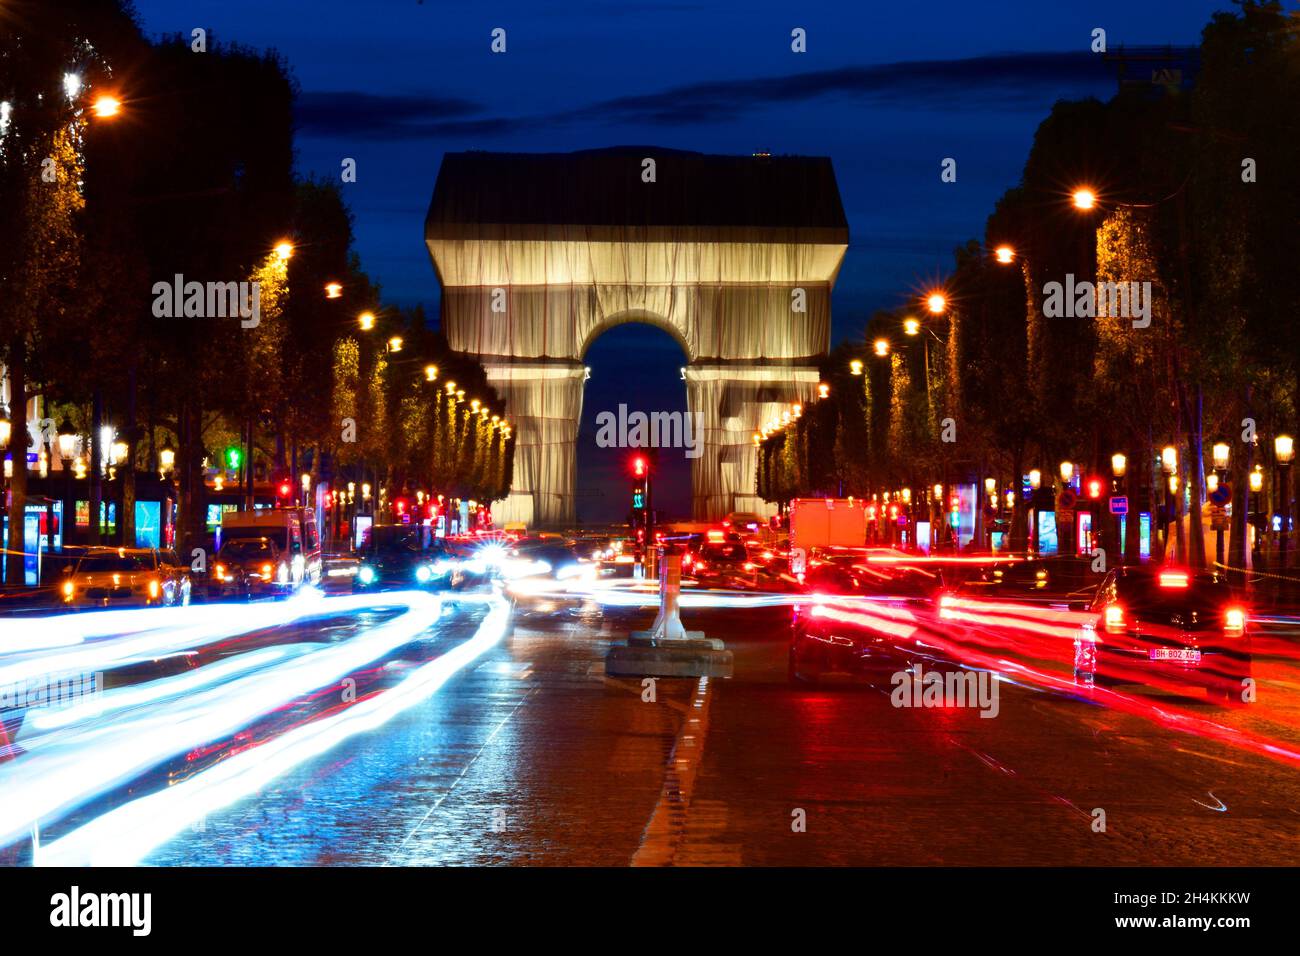 Vue nocturne de l'arche triomphale enveloppée de Christo depuis l'avenue des champs-Élysées, Paris, France. Banque D'Images